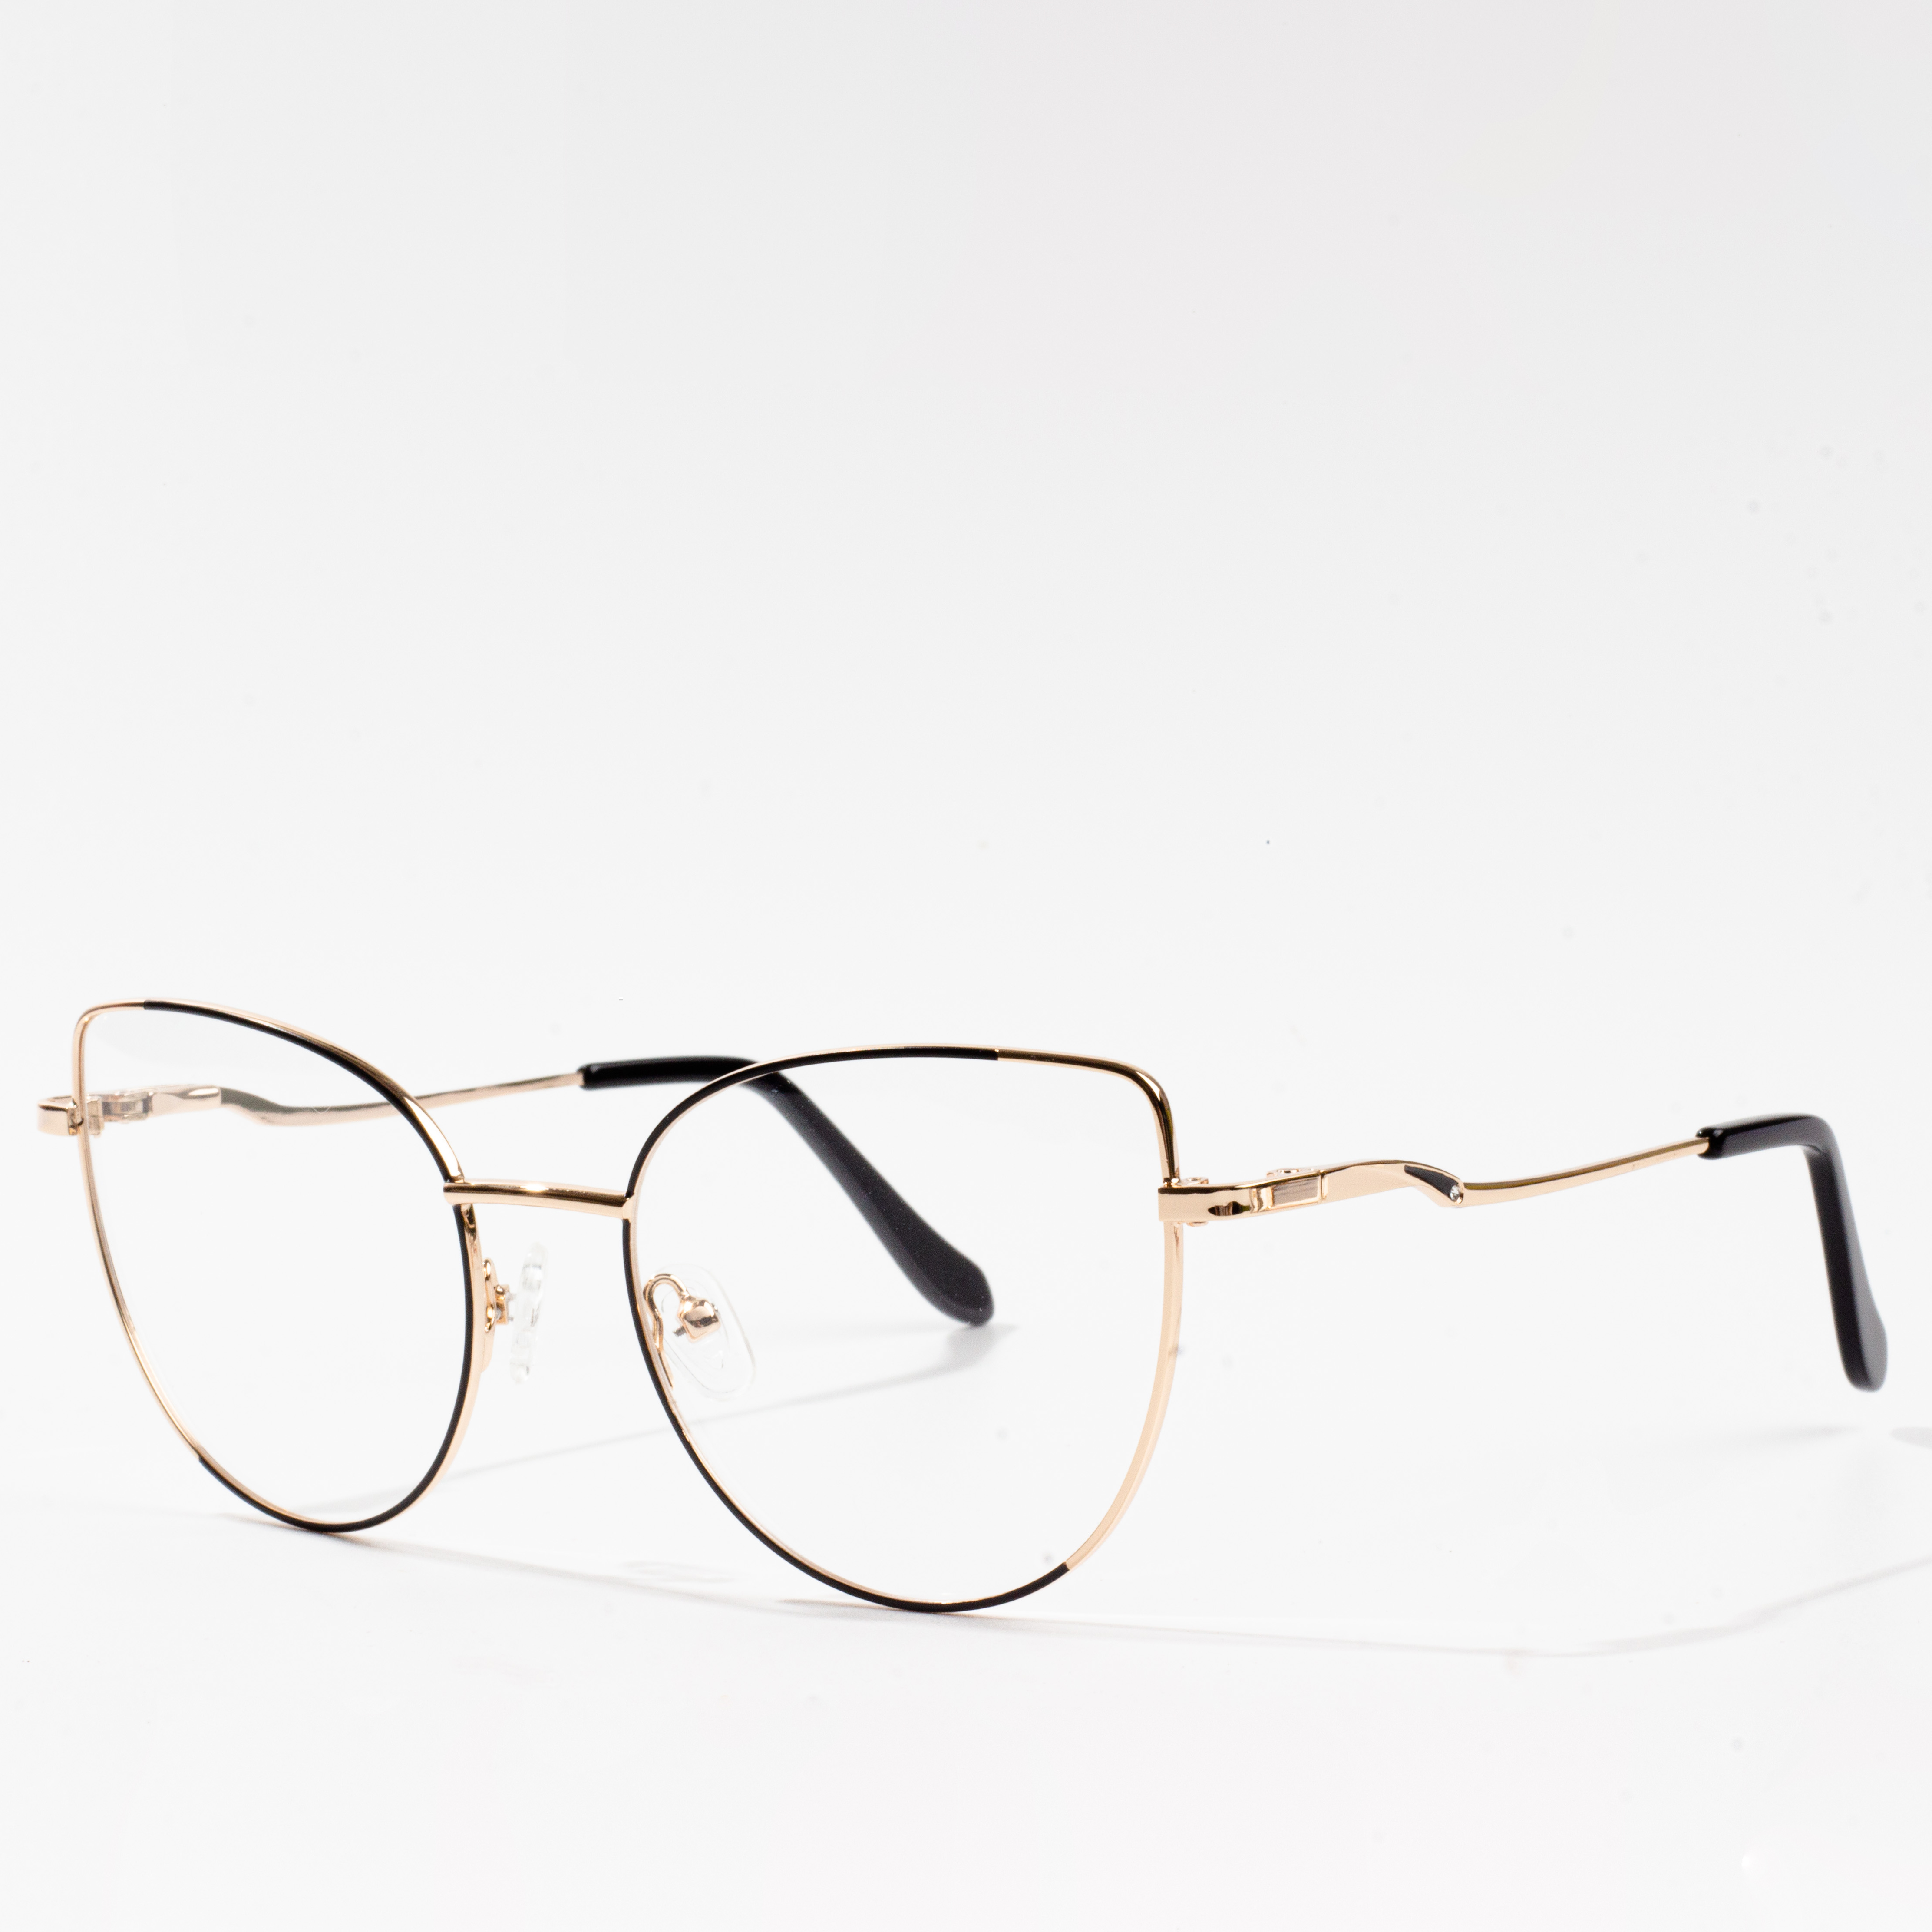 frame for eyeglasses